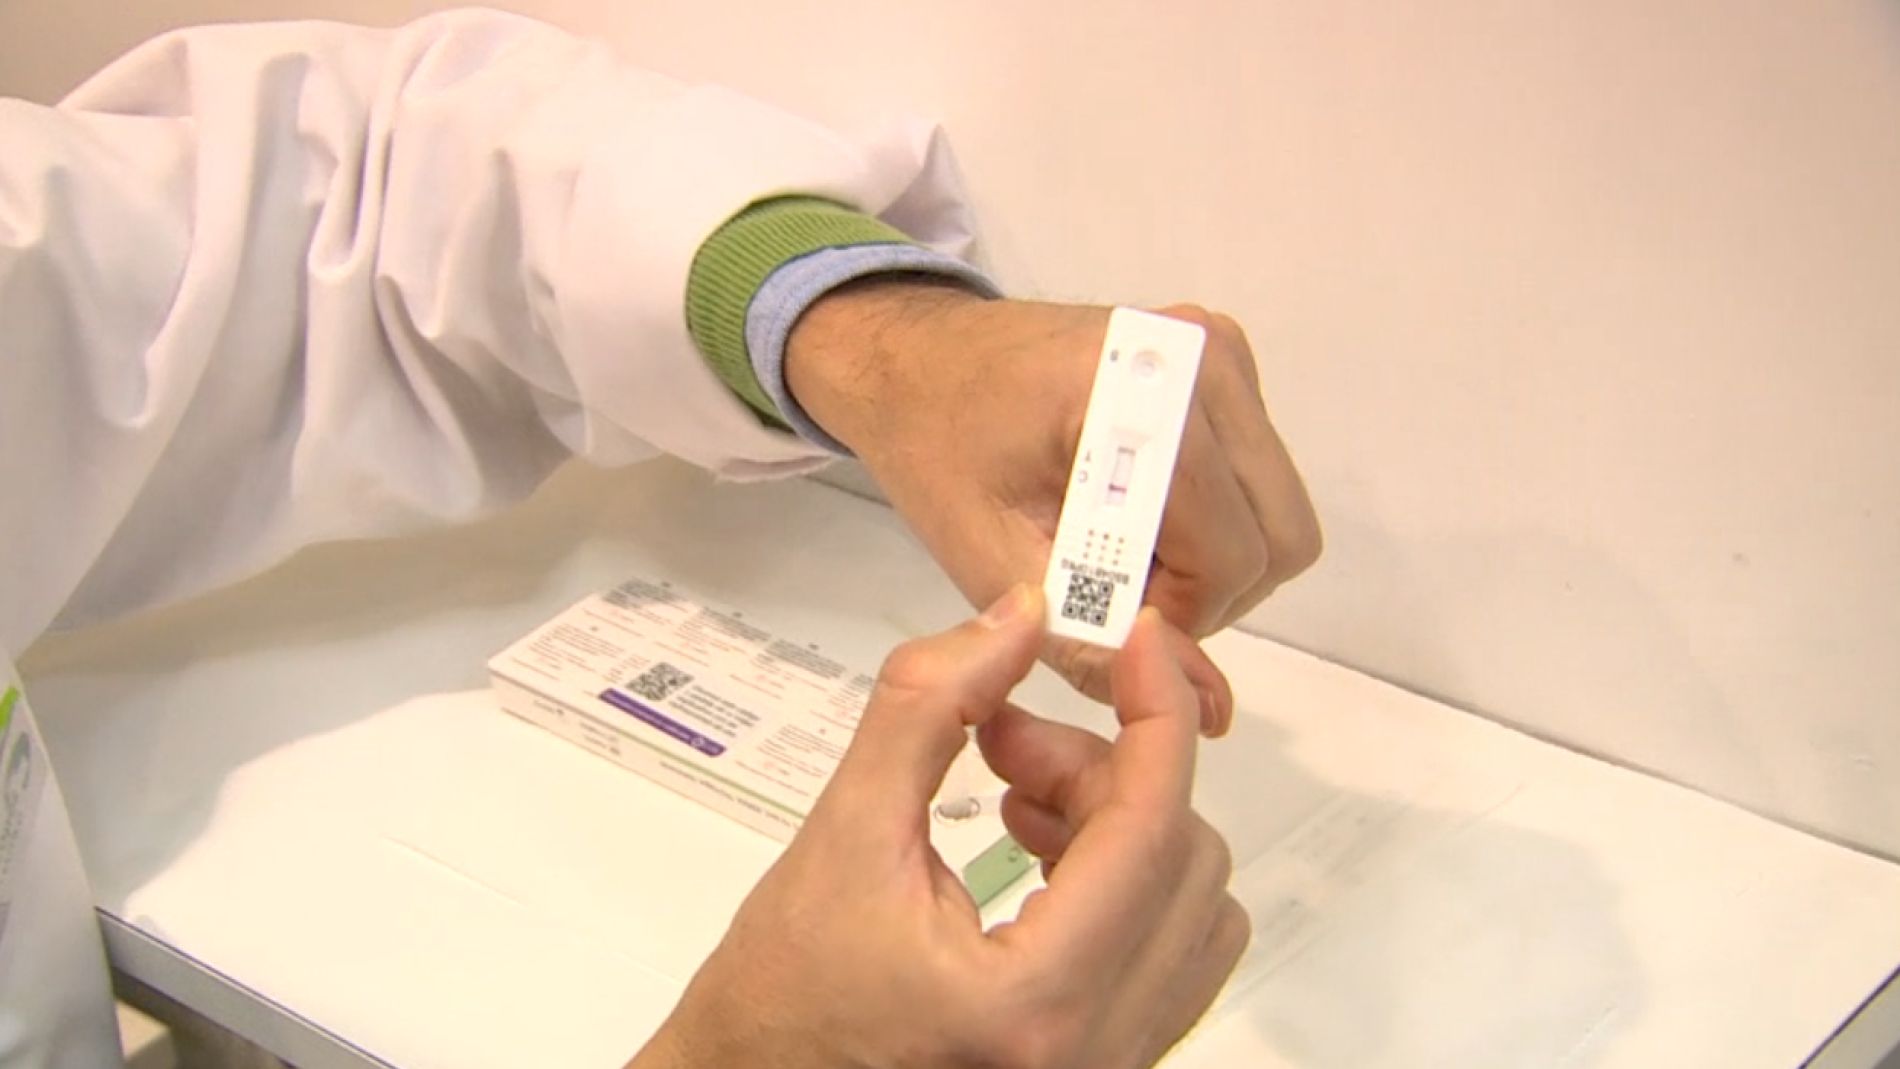 Test de antígenos en farmacias: Lo que debes saber sobre las pruebas que se venderán desde hoy